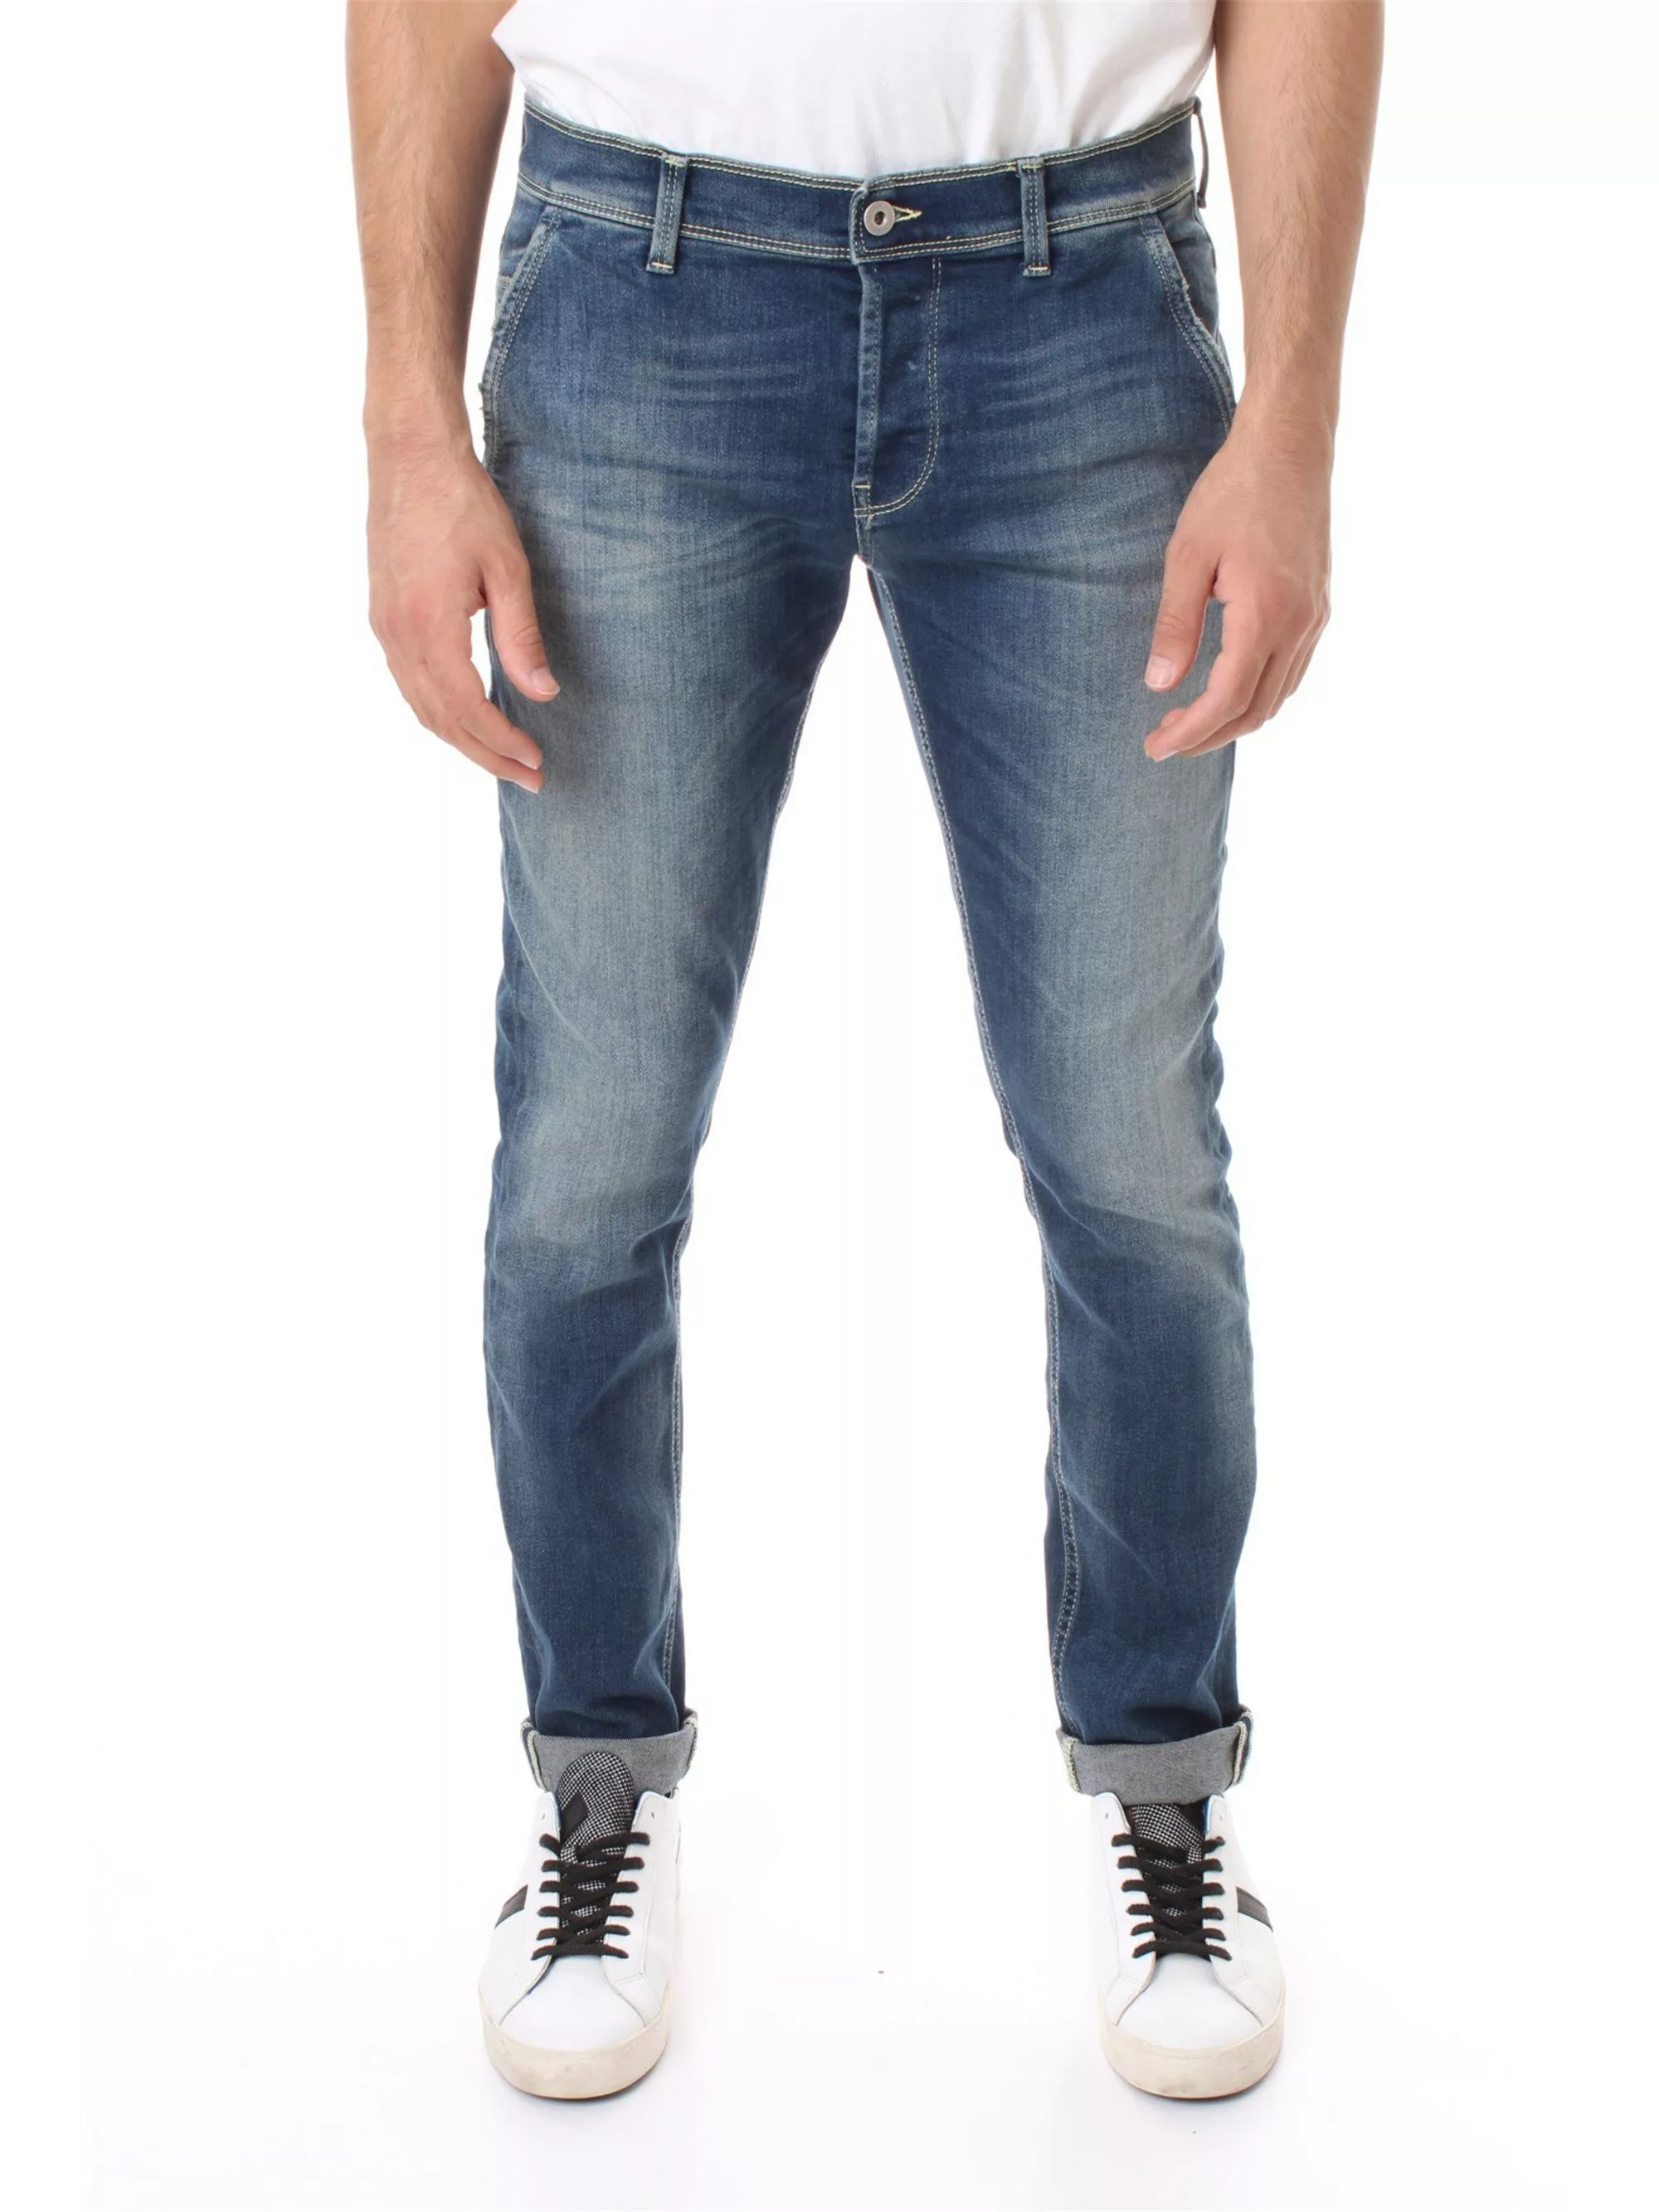 DONDUP dünn Herren blau jeans günstig online kaufen